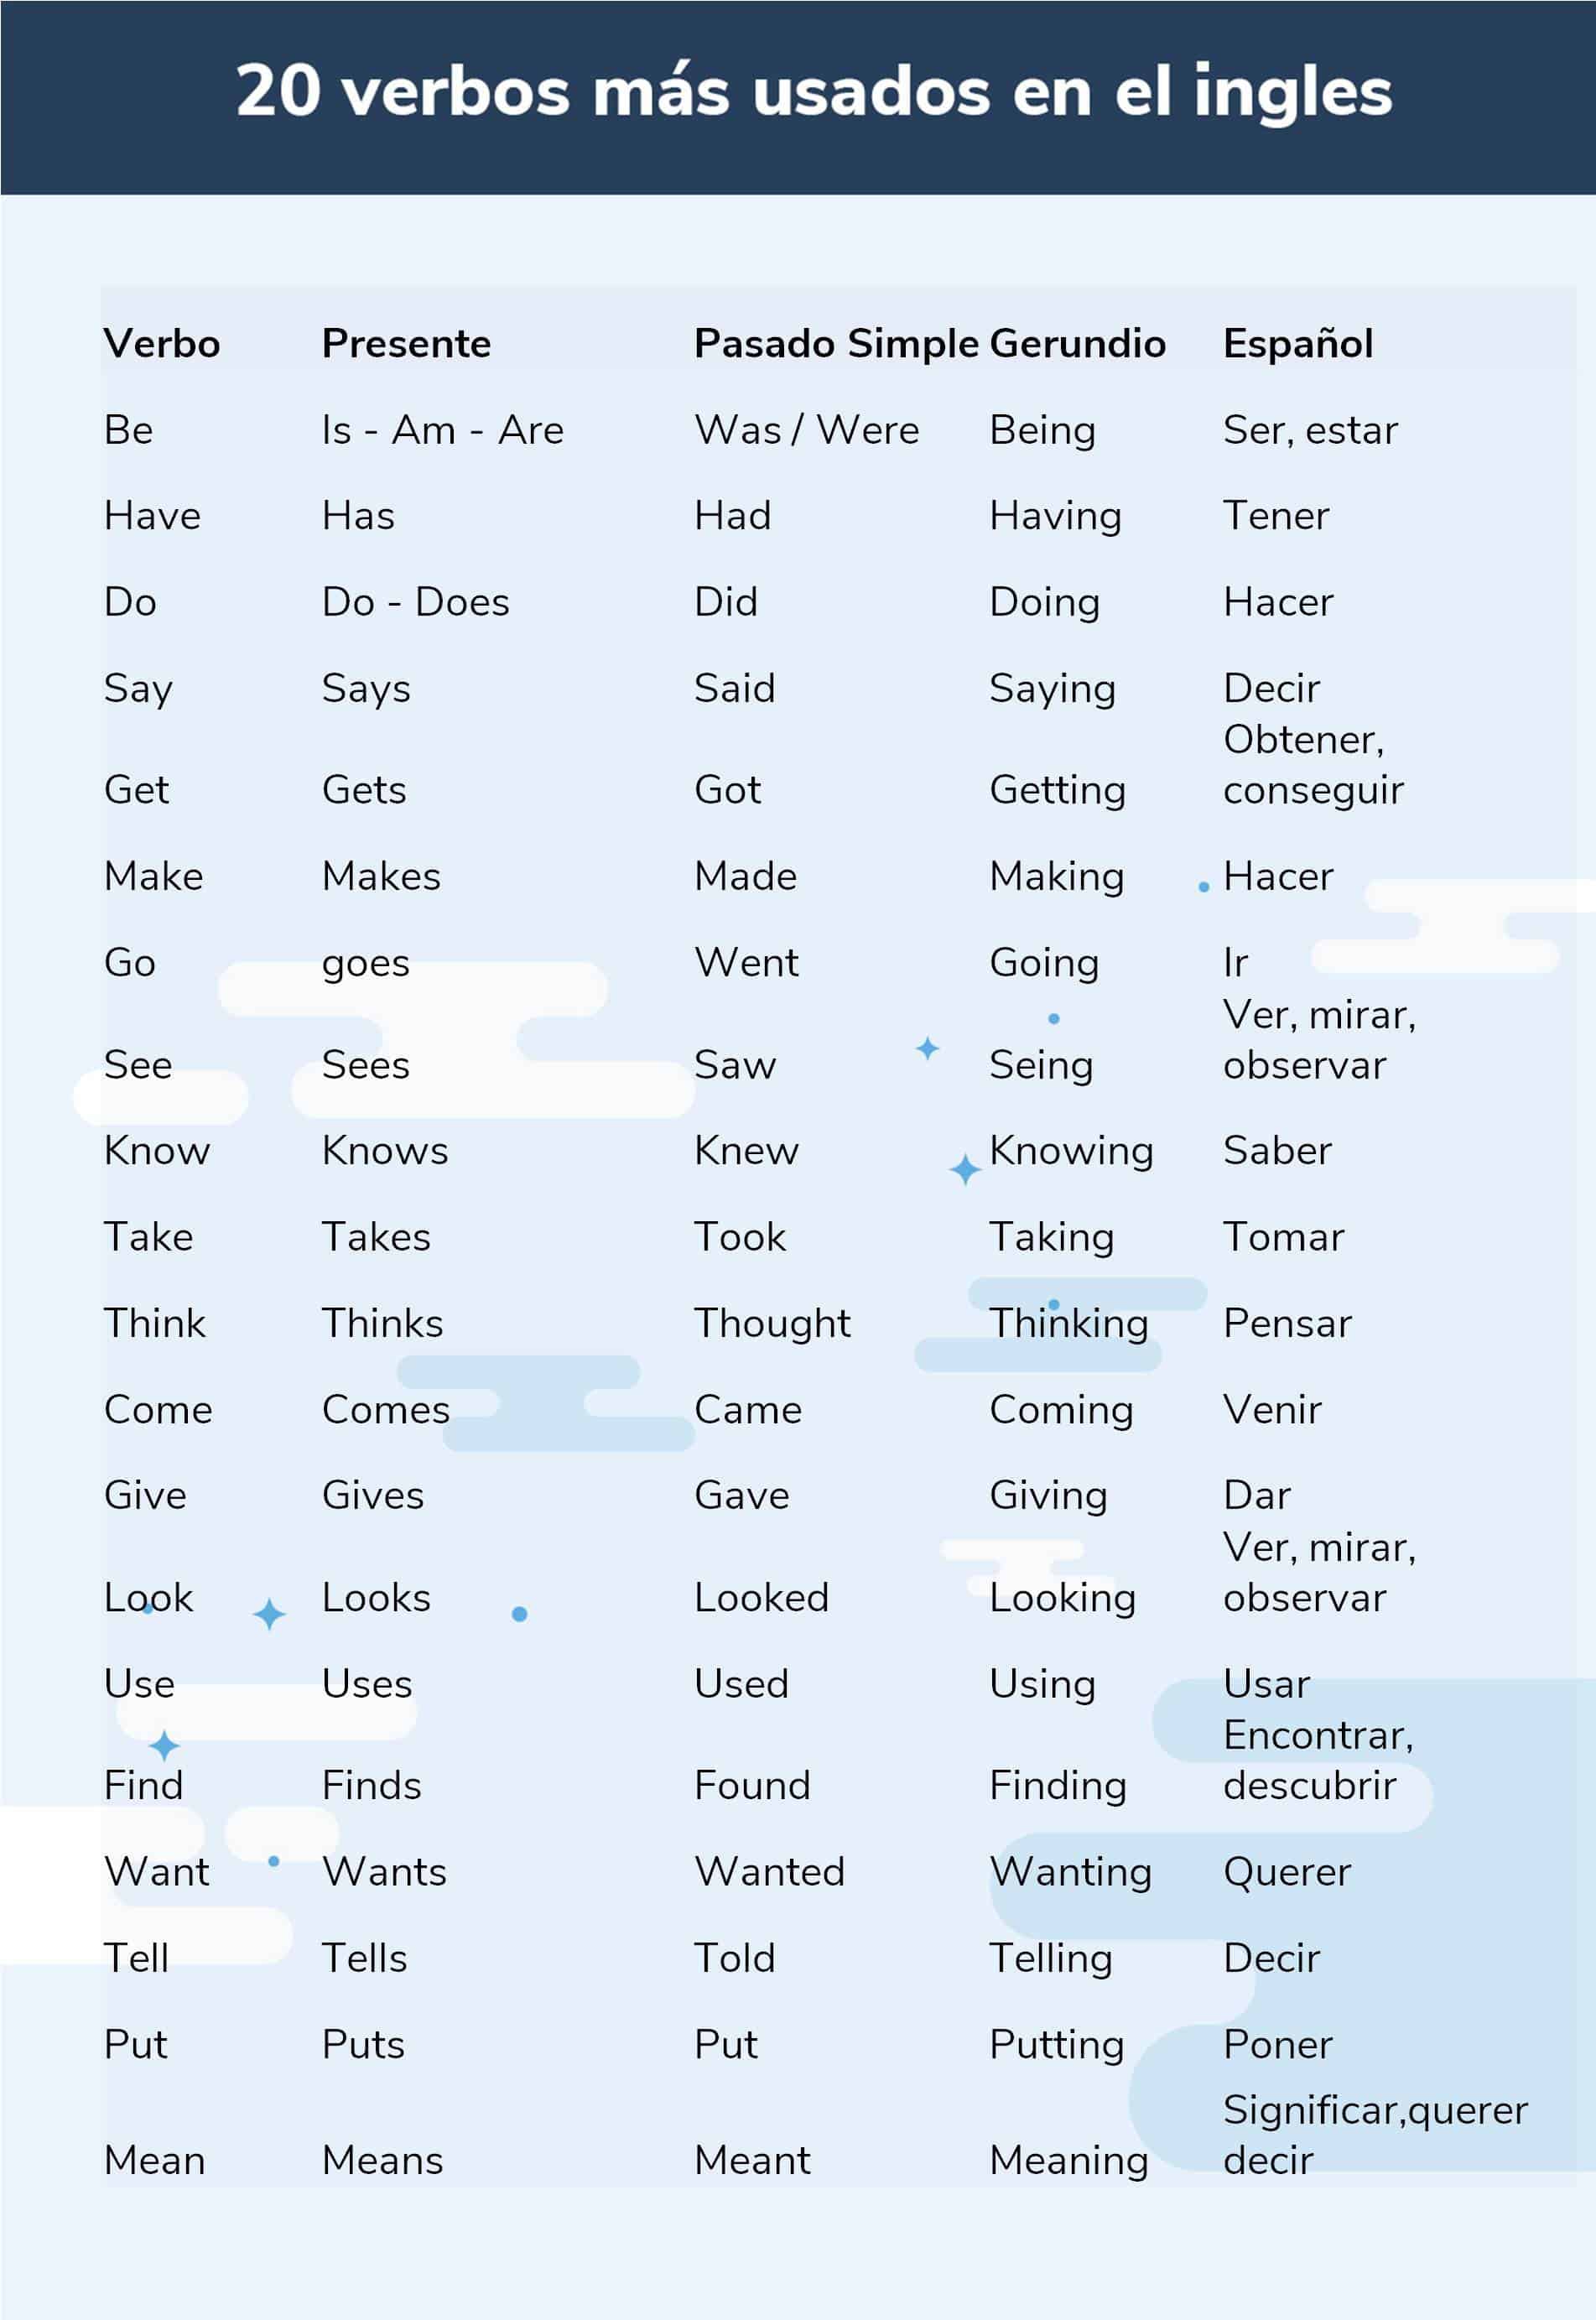 20 czasowników w języku angielskim najczęściej używanych